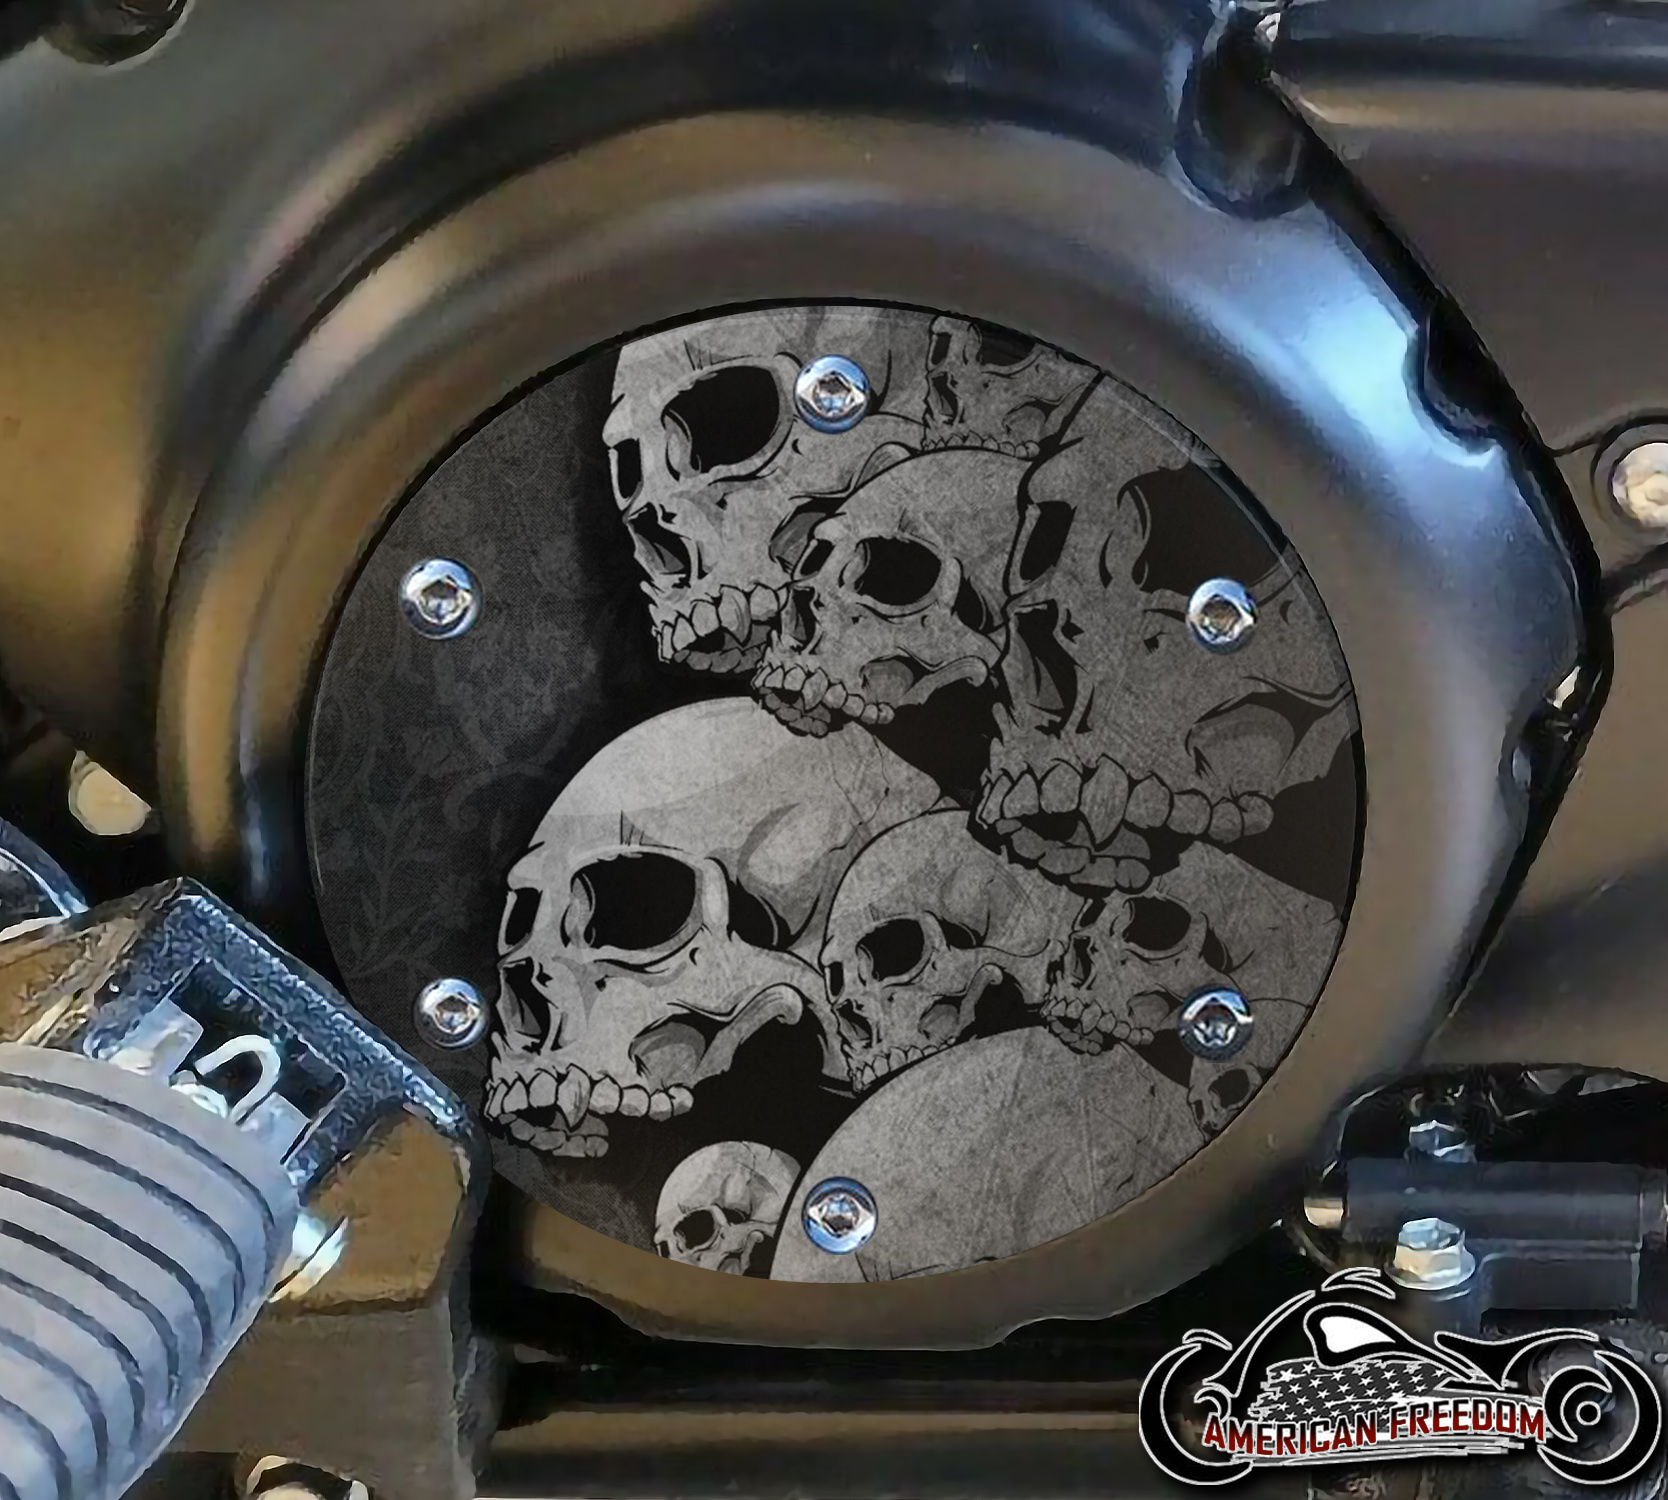 SUZUKI M109R Derby/Engine Cover - Skull Pile (Gray)